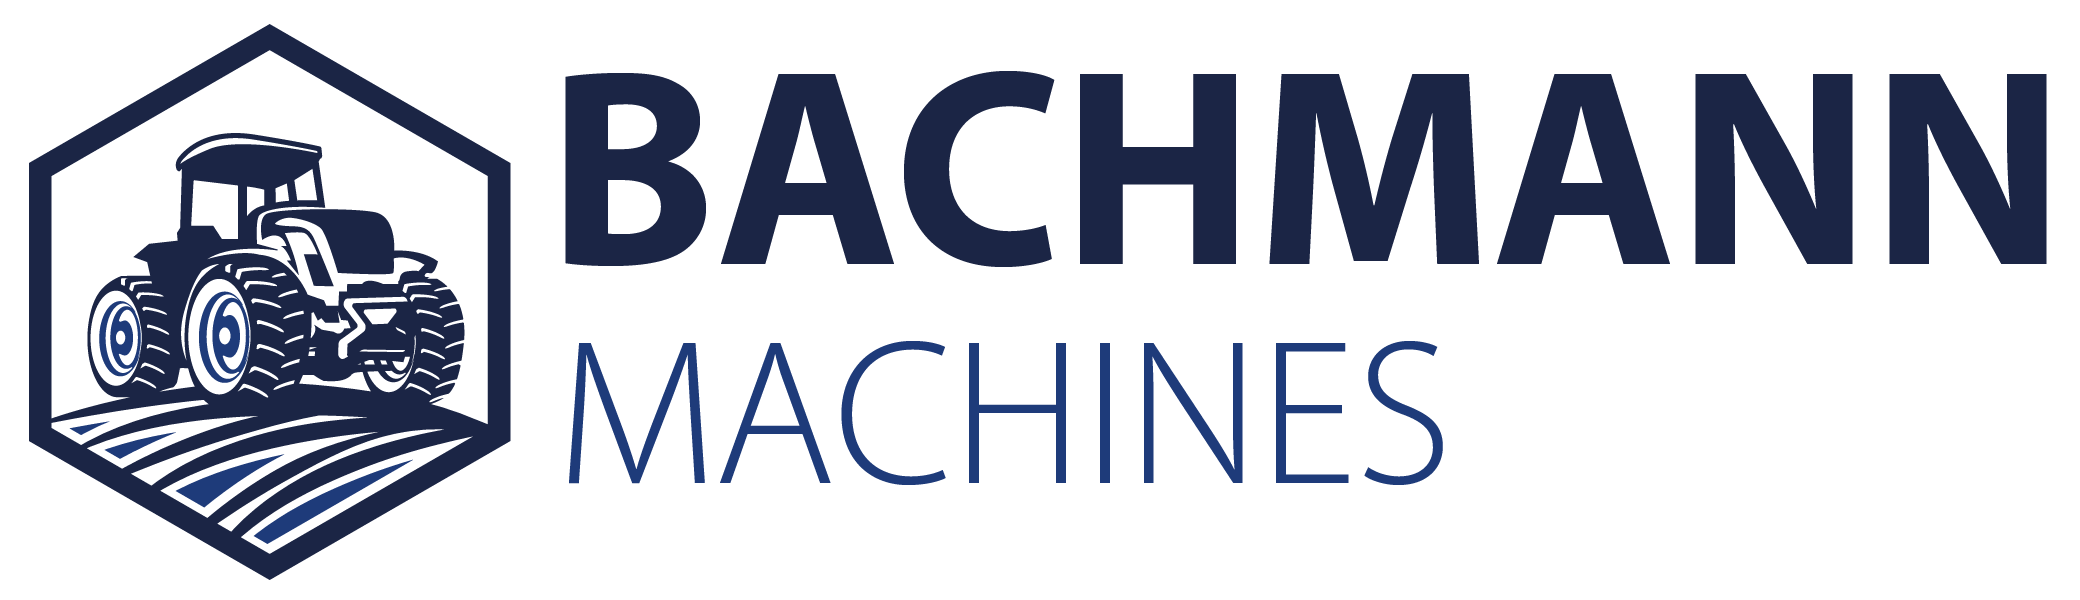 Bachmann Machines